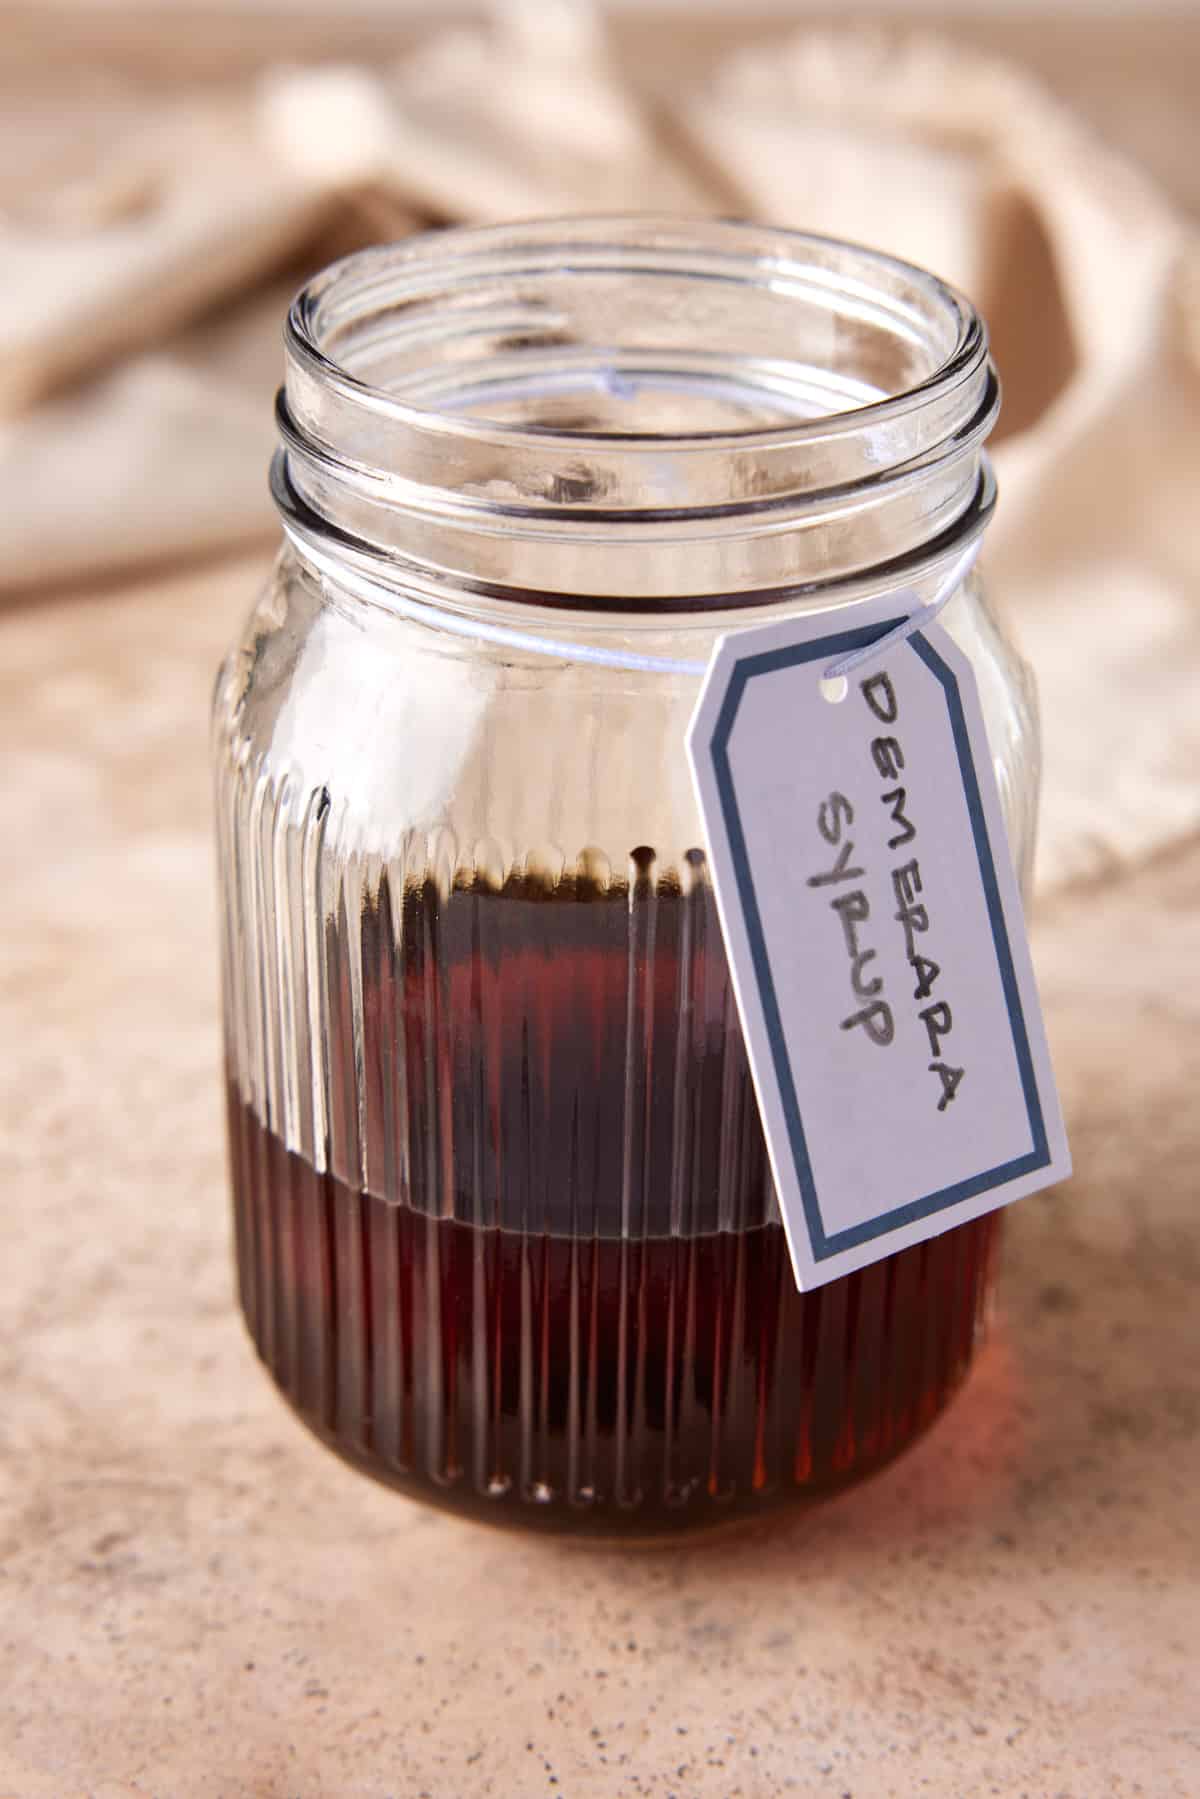 Demerara syrup in mason jar with label.